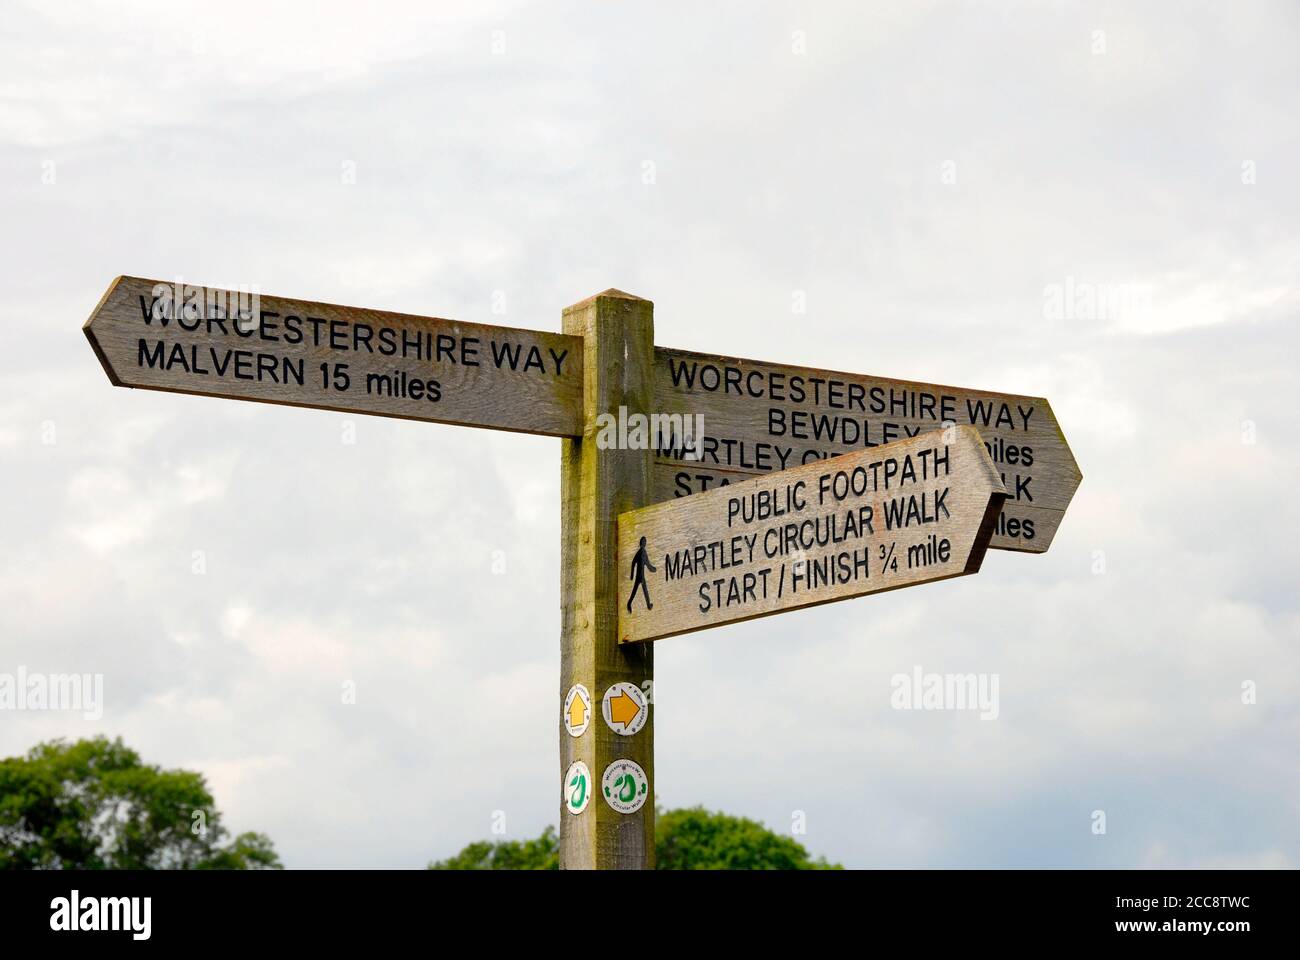 Panneau dans la campagne anglaise, avec des indications d'accès et des distances à divers endroits à proximité, Wocestershire, Angleterre Banque D'Images